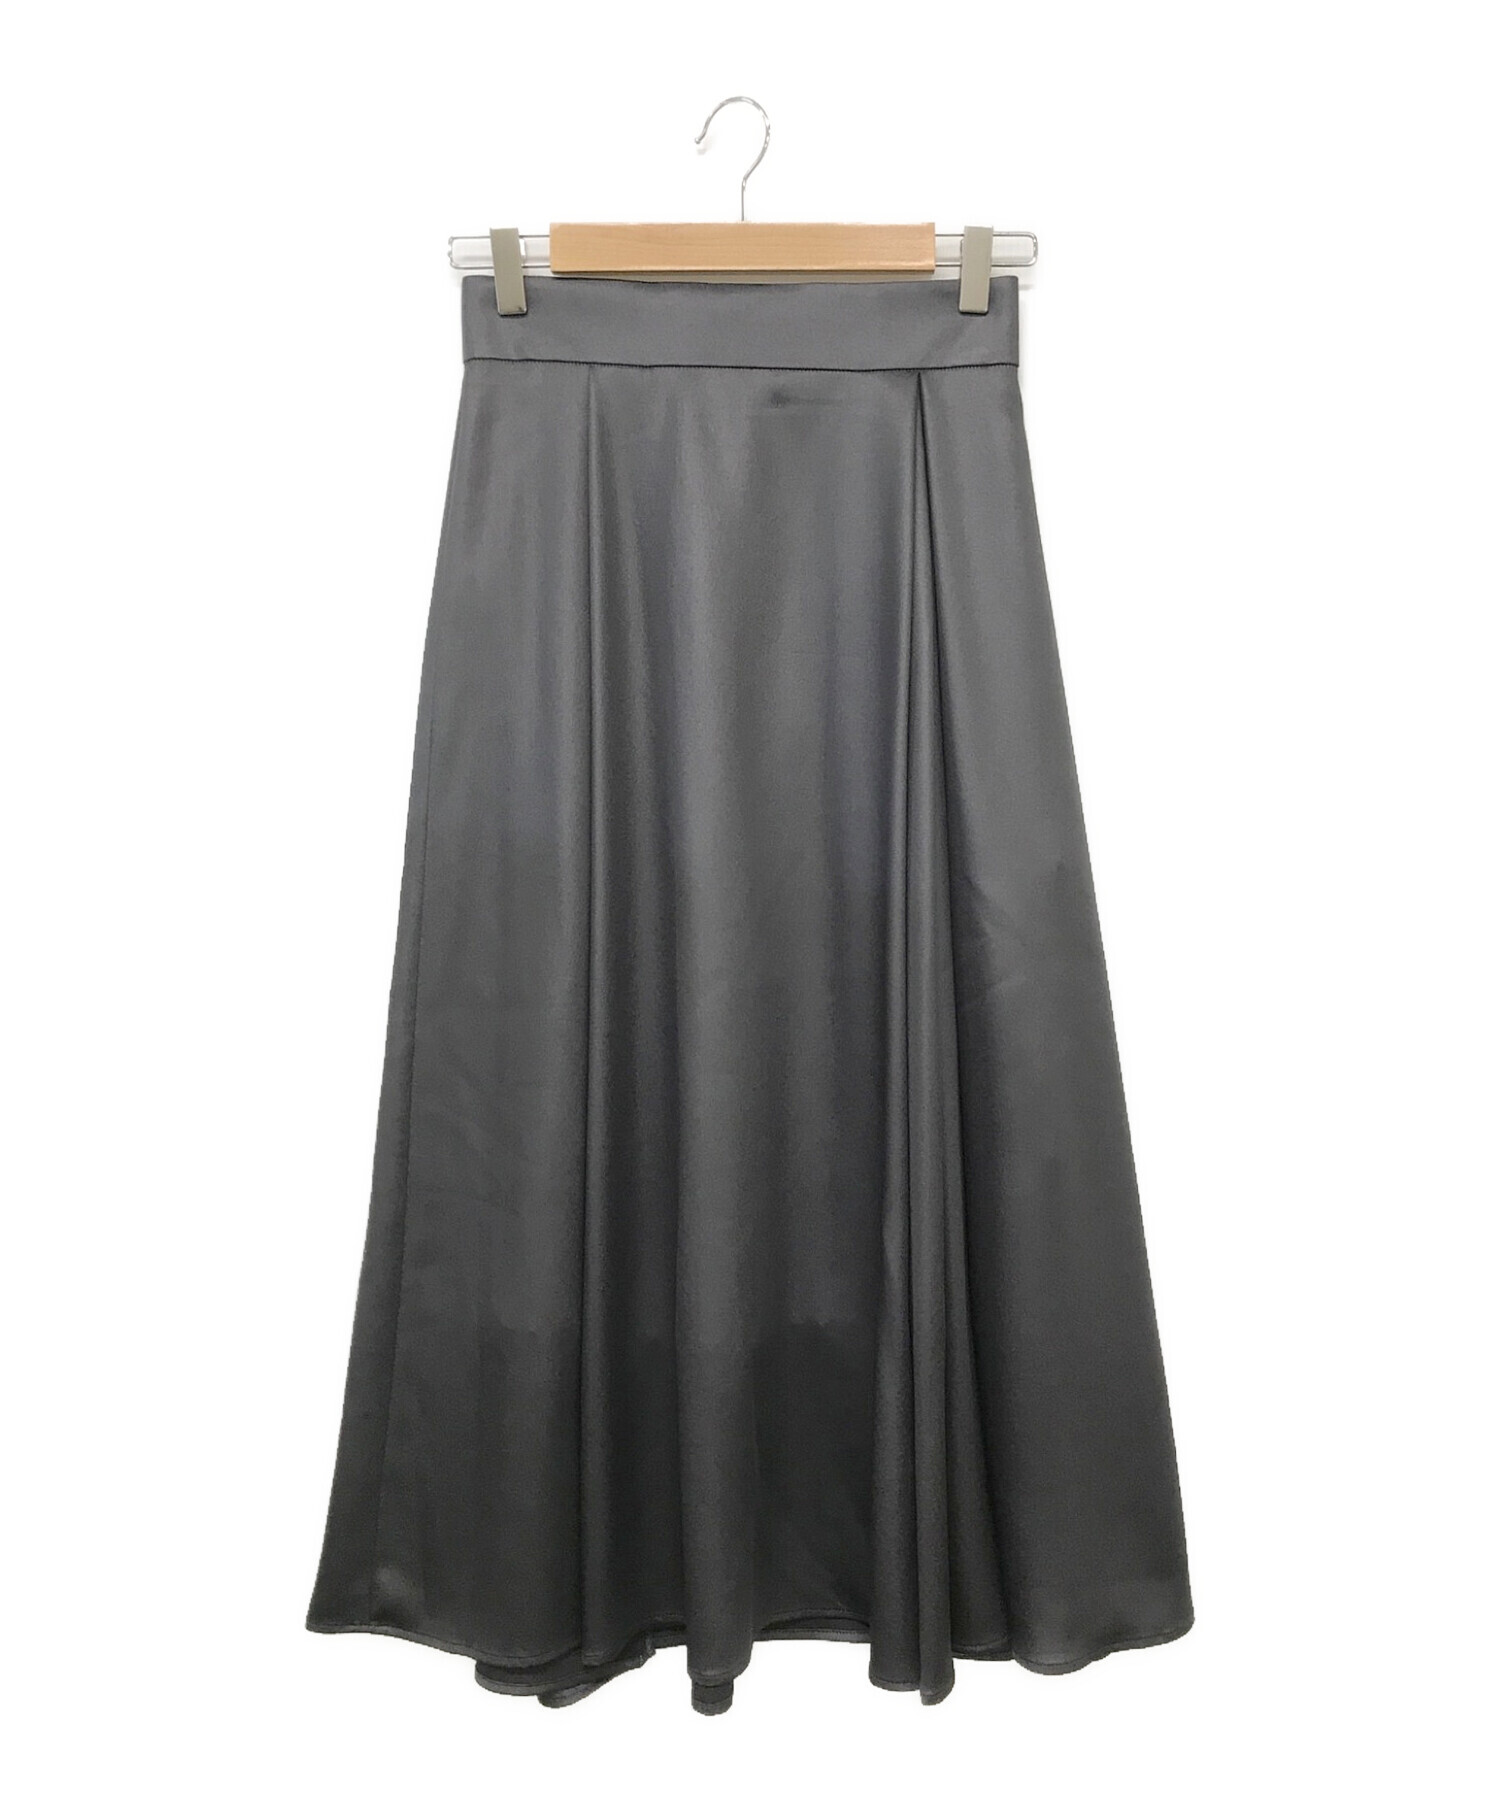 ANAYI (アナイ) レザーライクサテンフレアスカート グレー サイズ:36 未使用品